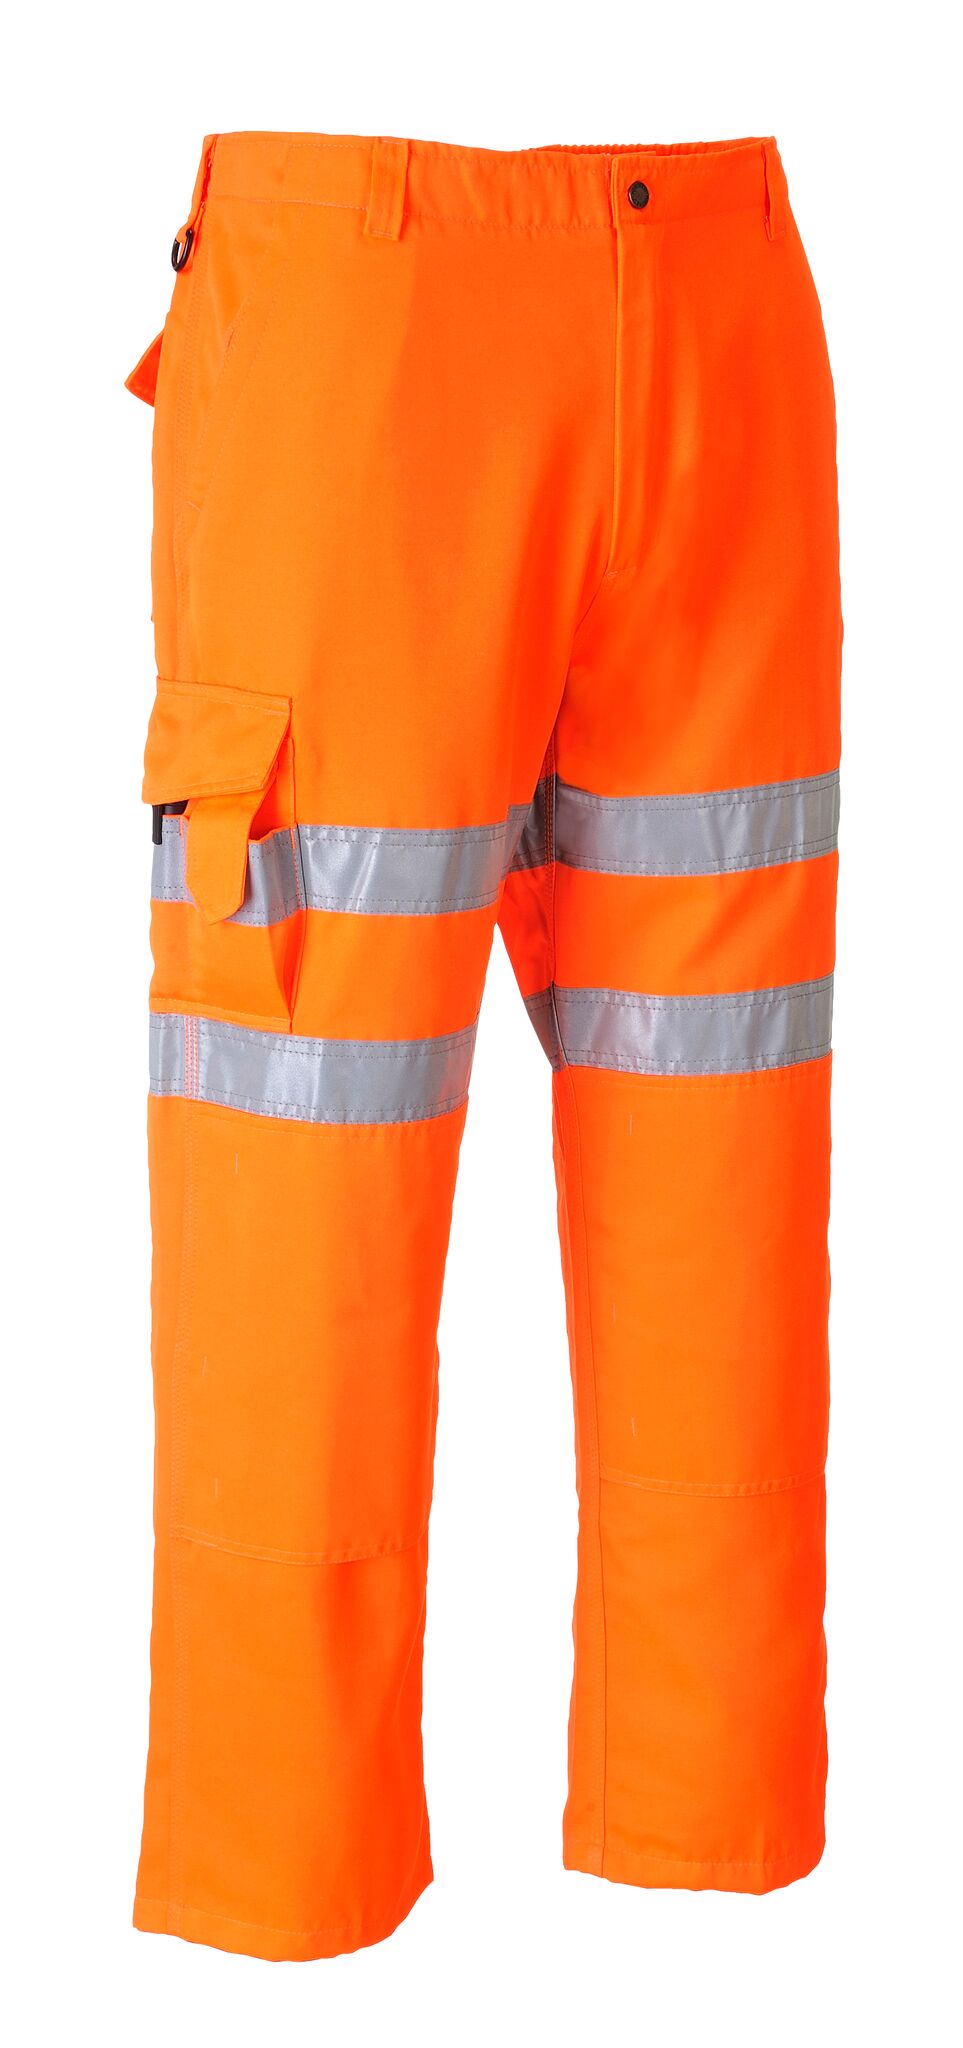 Spodnie bojówki kolejarskie RT46